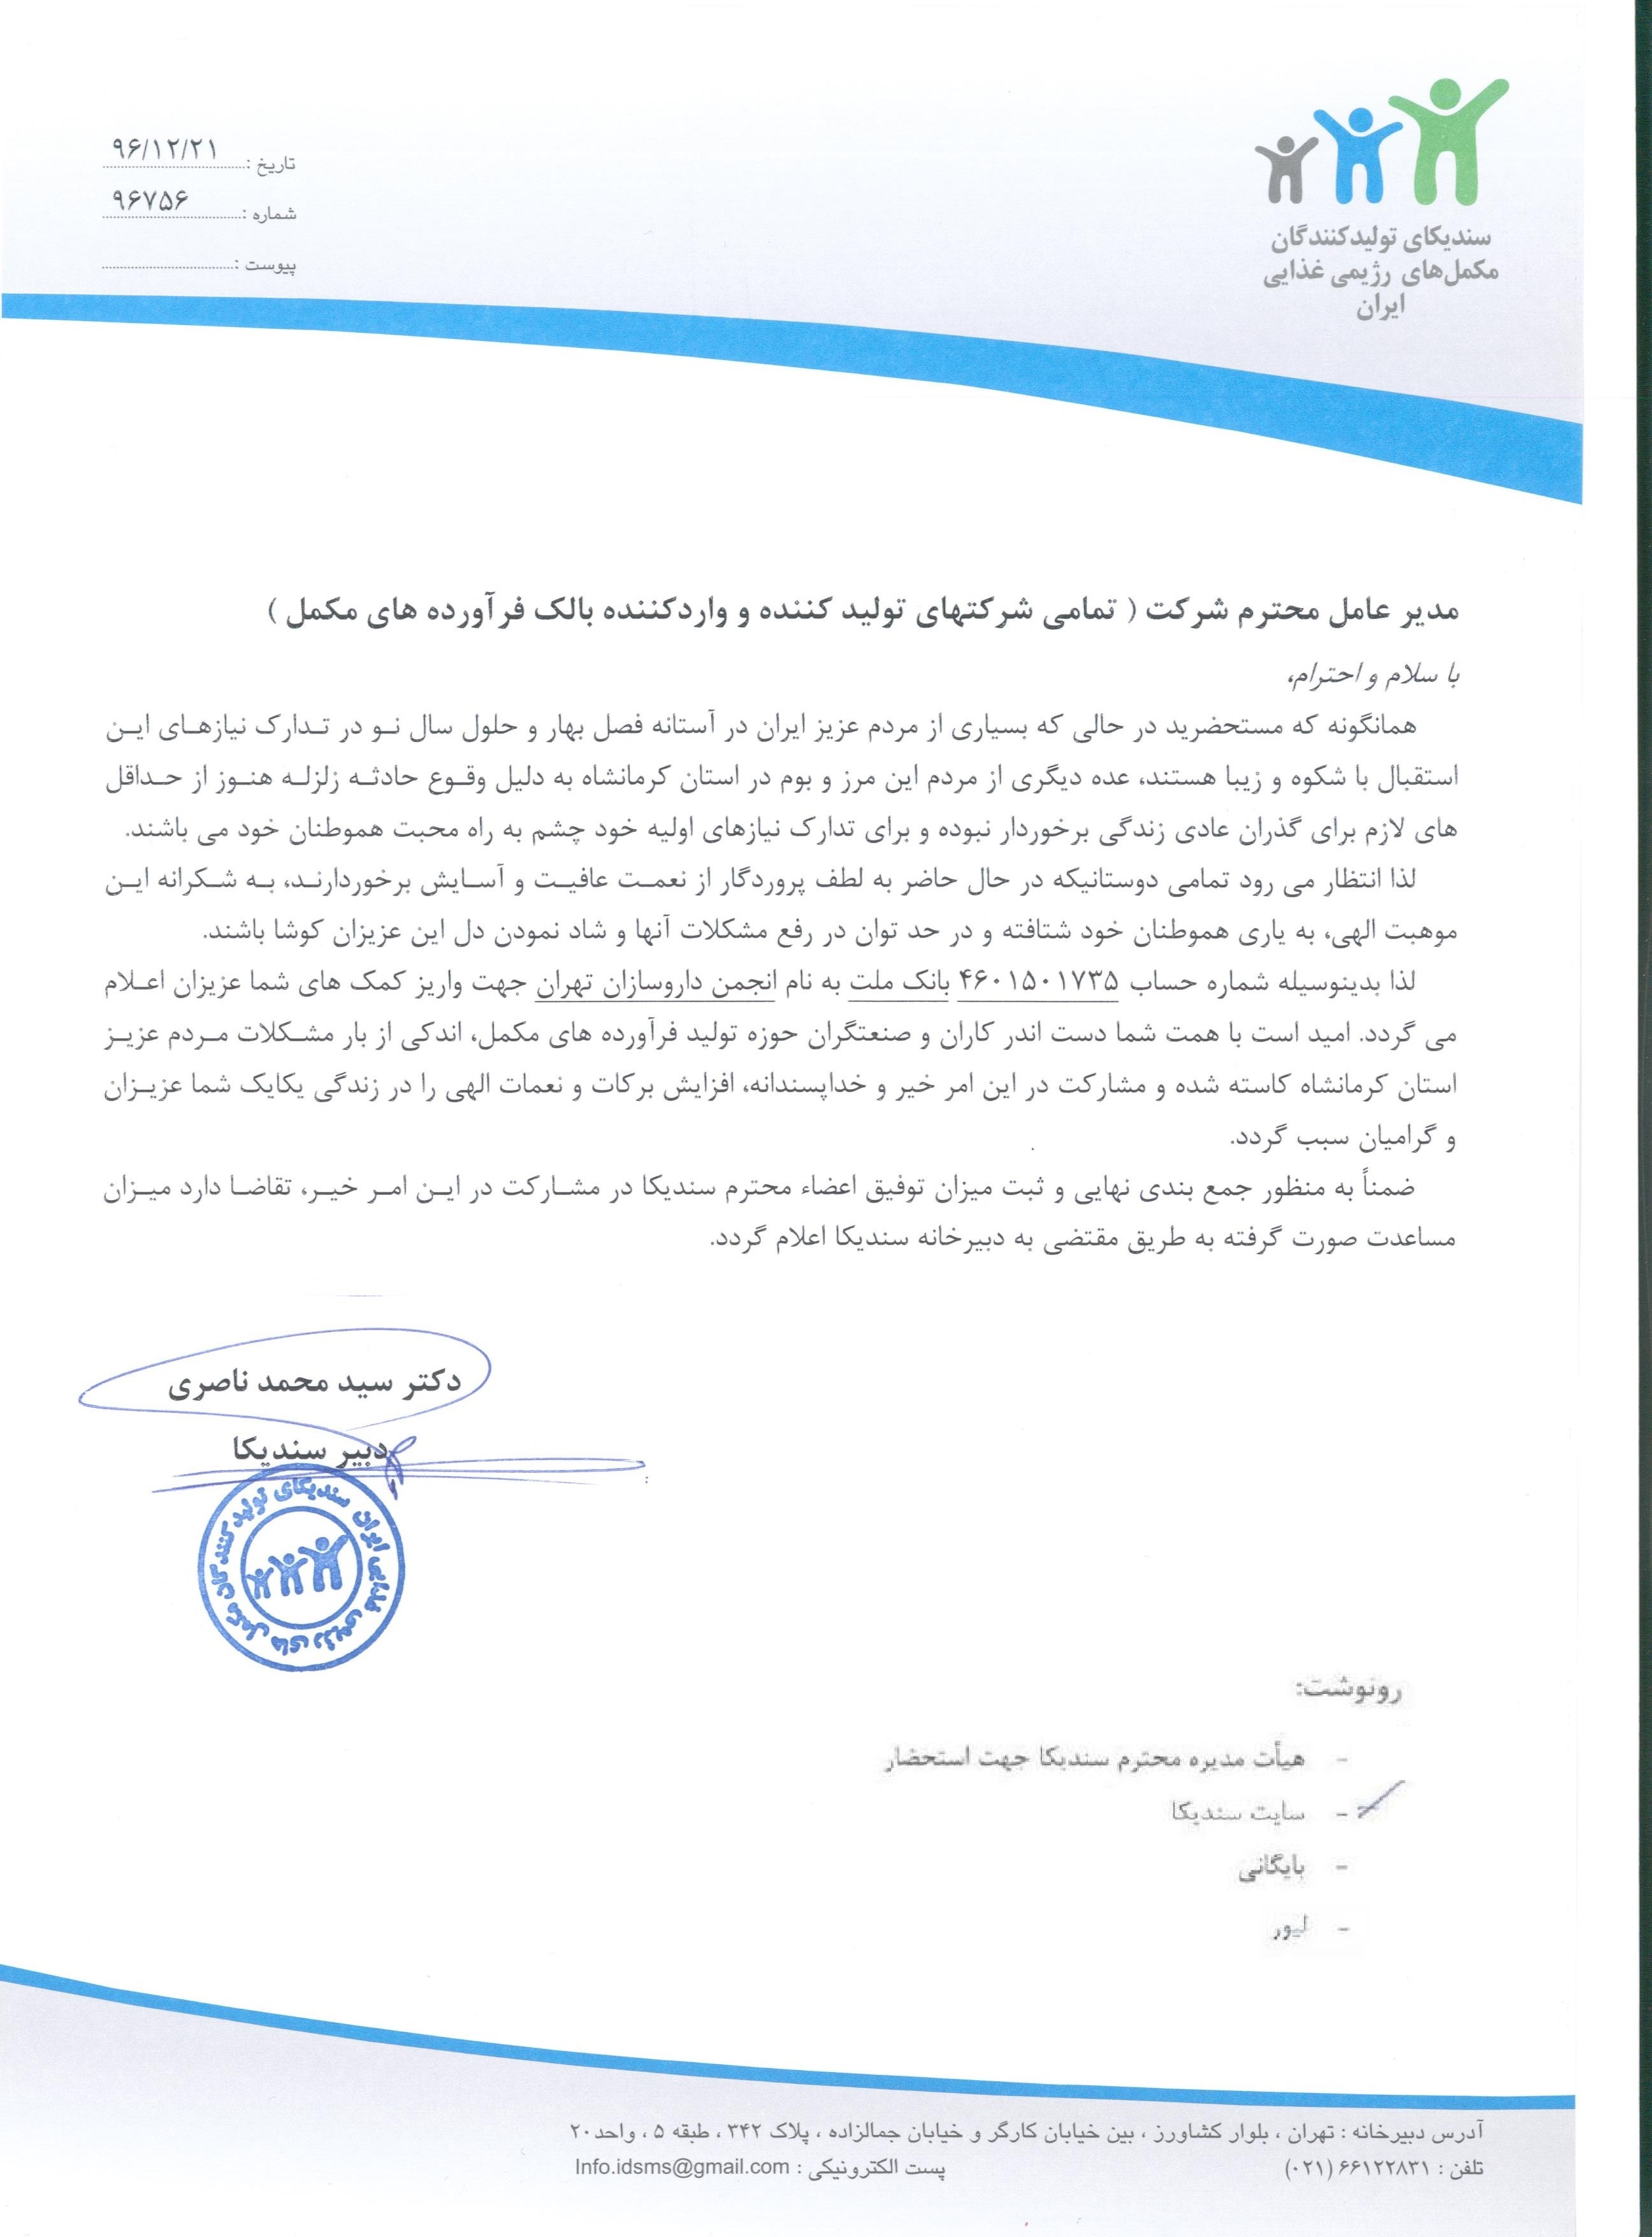 نامه در خصوص اعلام شماره حساب انجمن داروسازان جهت واریز کمک به مردم زلزله زده کرمانشاه